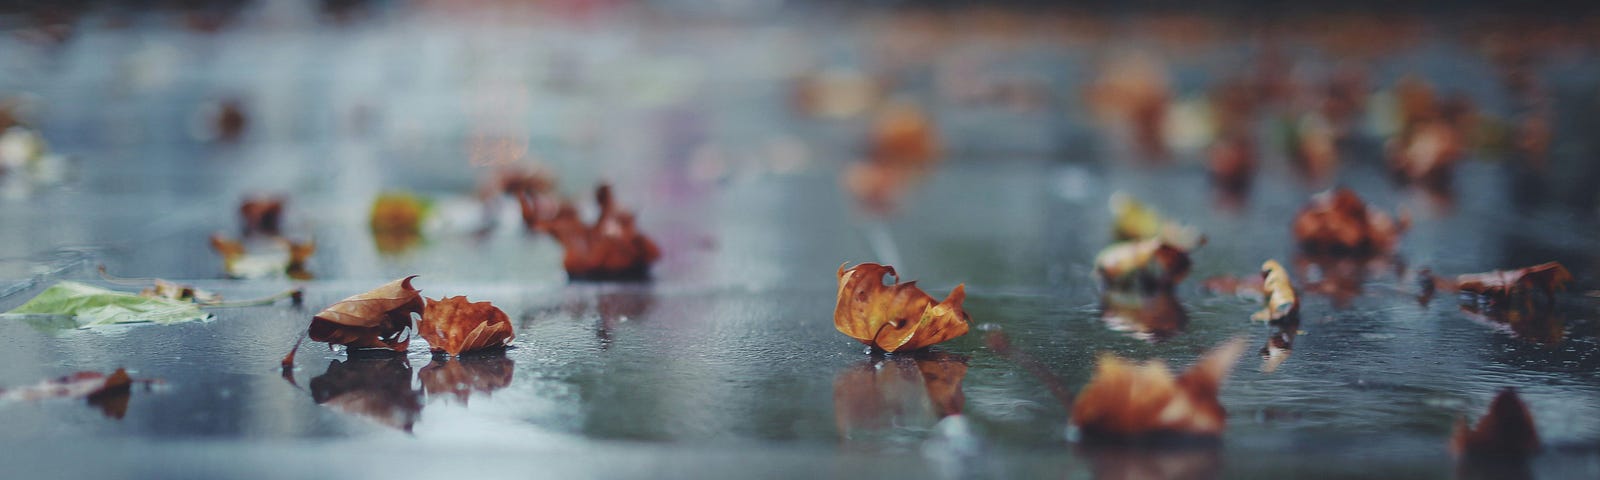 autumn leaves on a rainy sidewalk